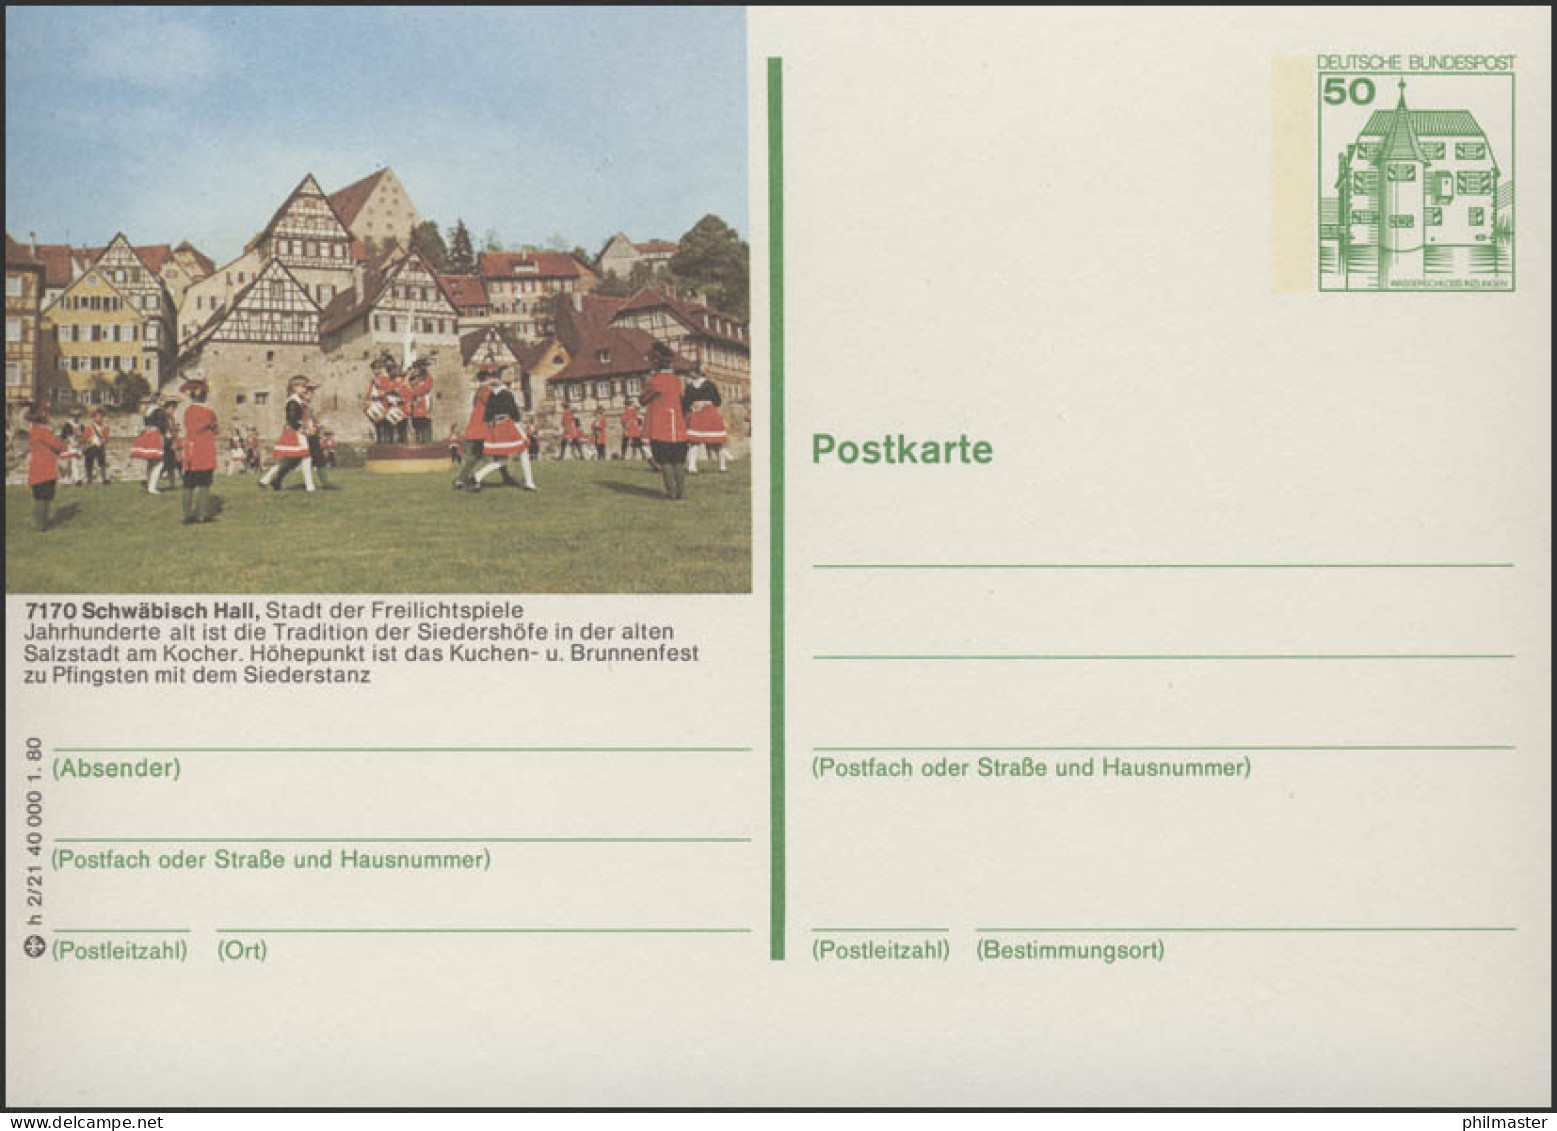 P130-h2/021 - 7170 Schwäbisch Hall, Siederstanz ** - Illustrated Postcards - Mint